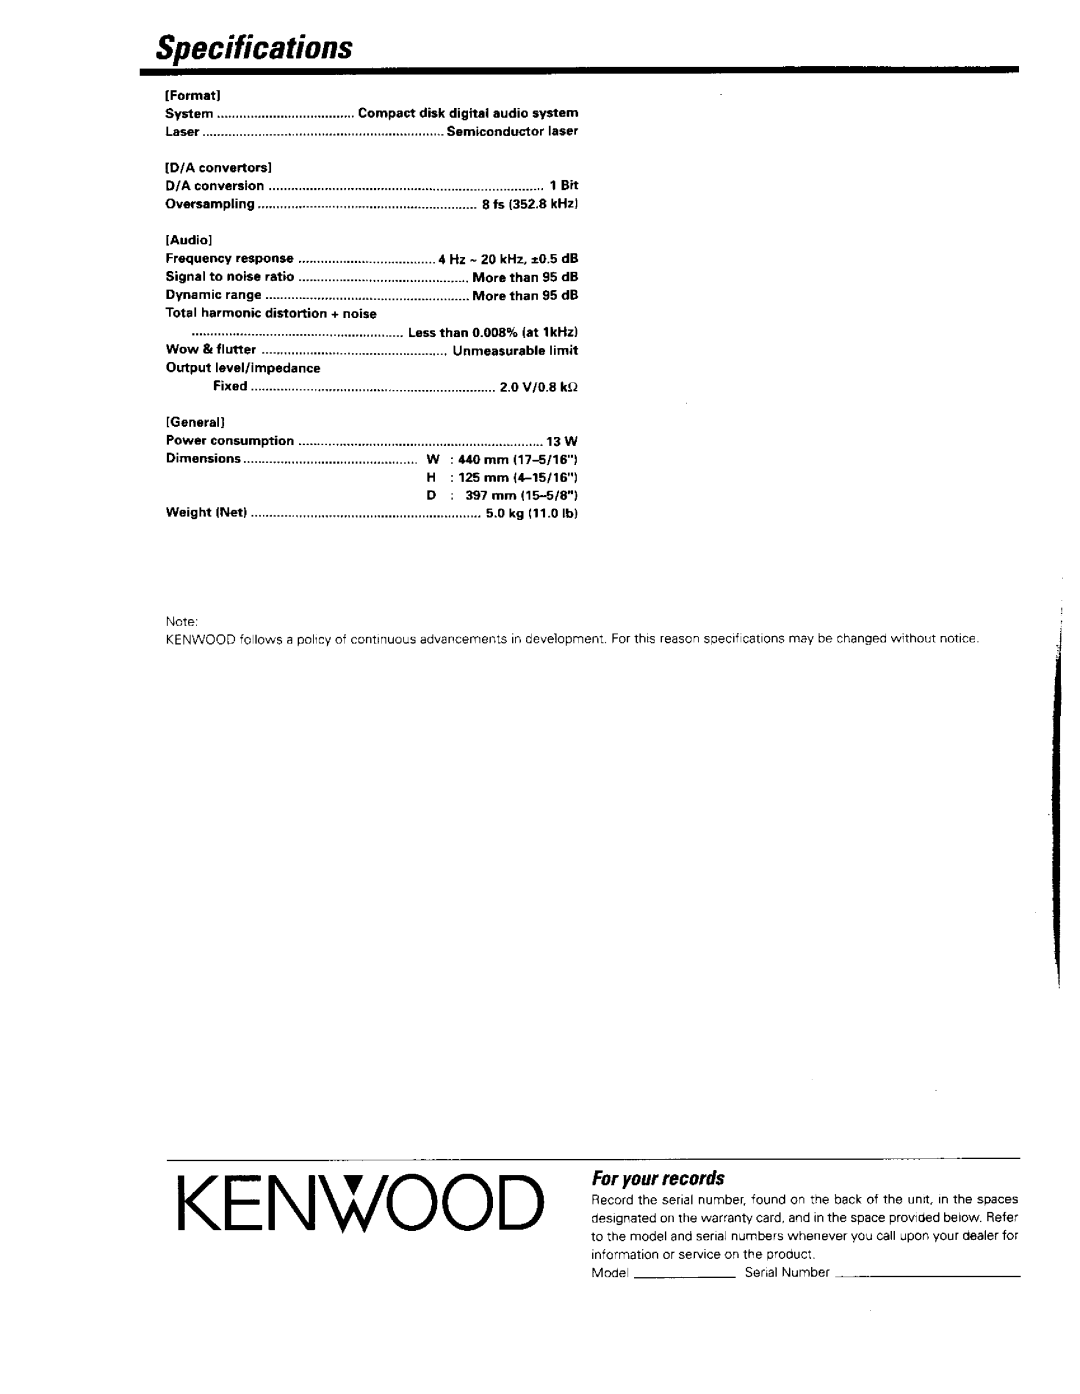 Kenwood DP-R797 manual 